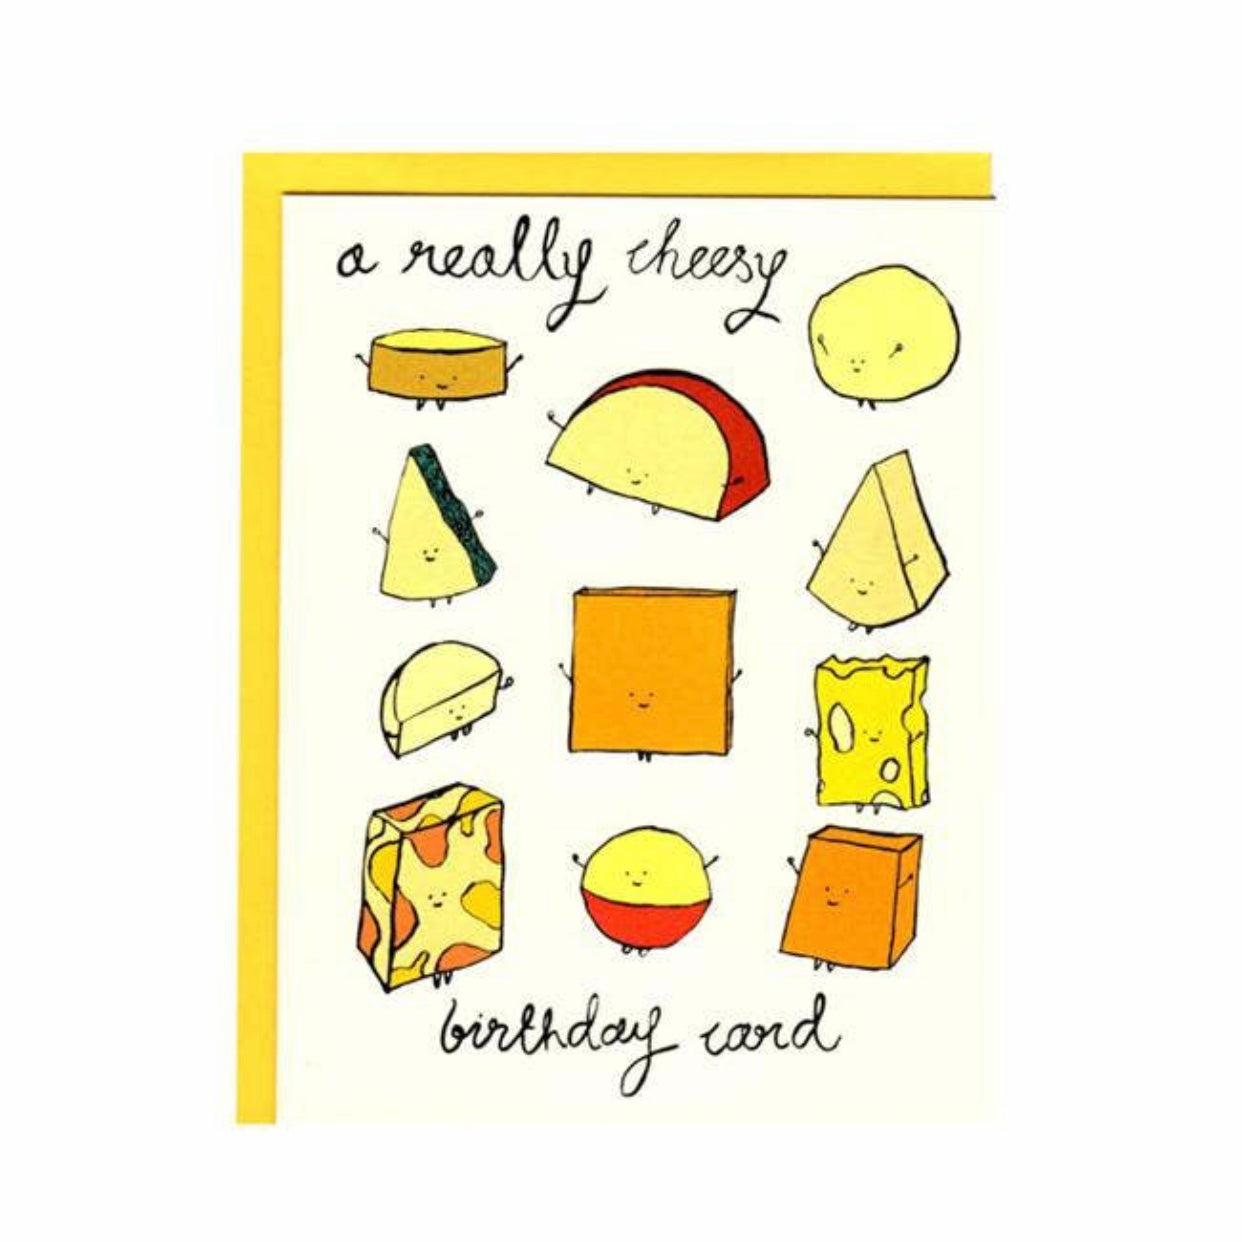 a really cheesy birthday card